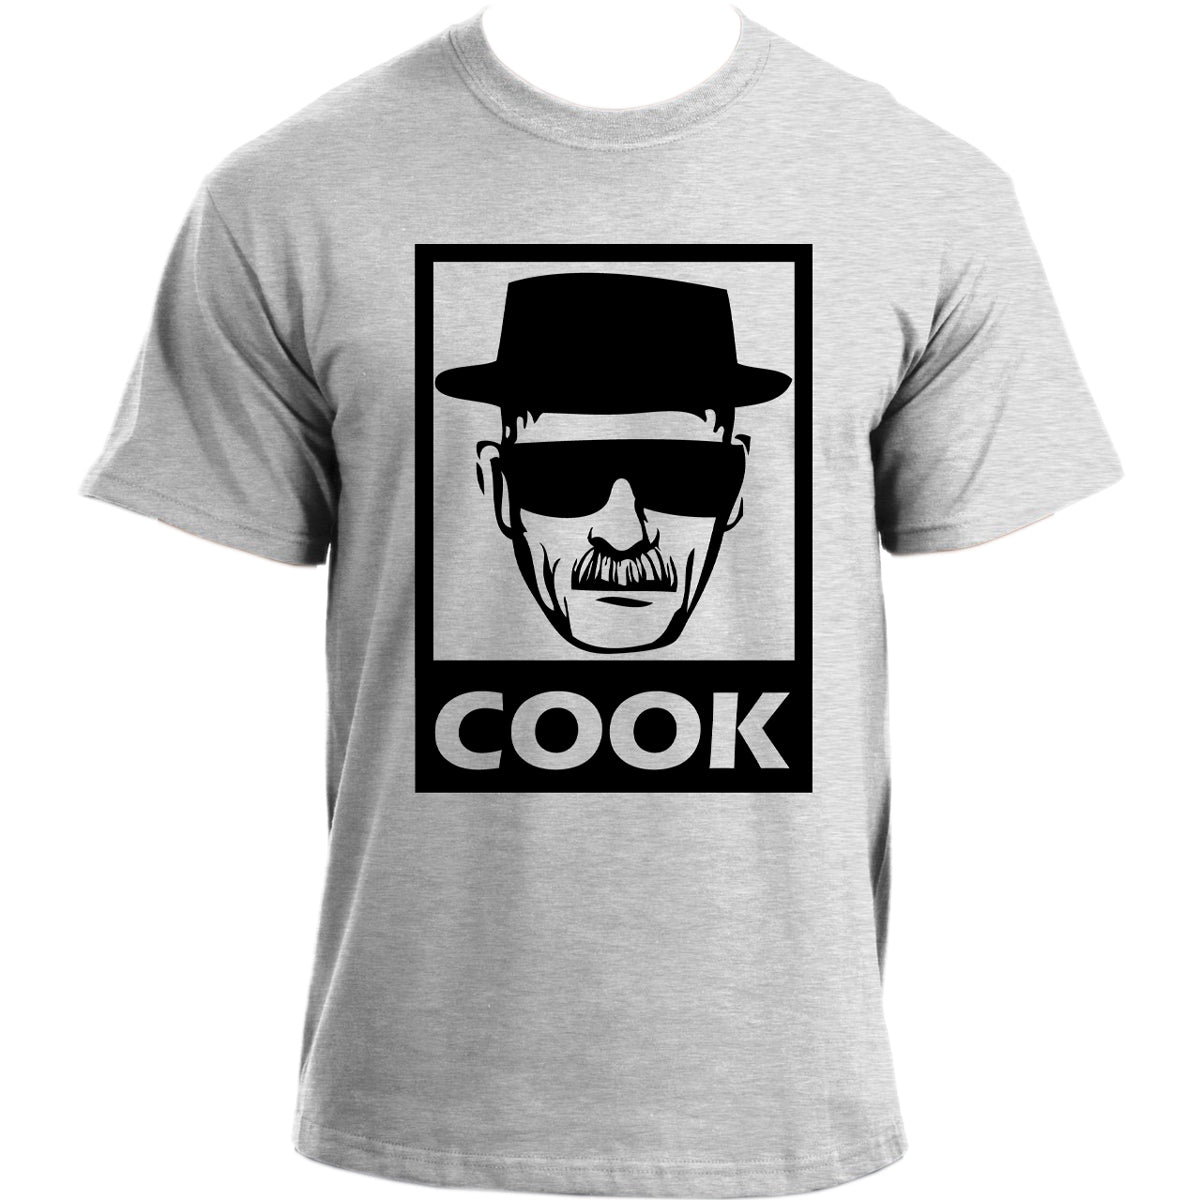 Heisenberg Cook Obey Walter White Mr. White Breaking Bad inspired T-Shirt